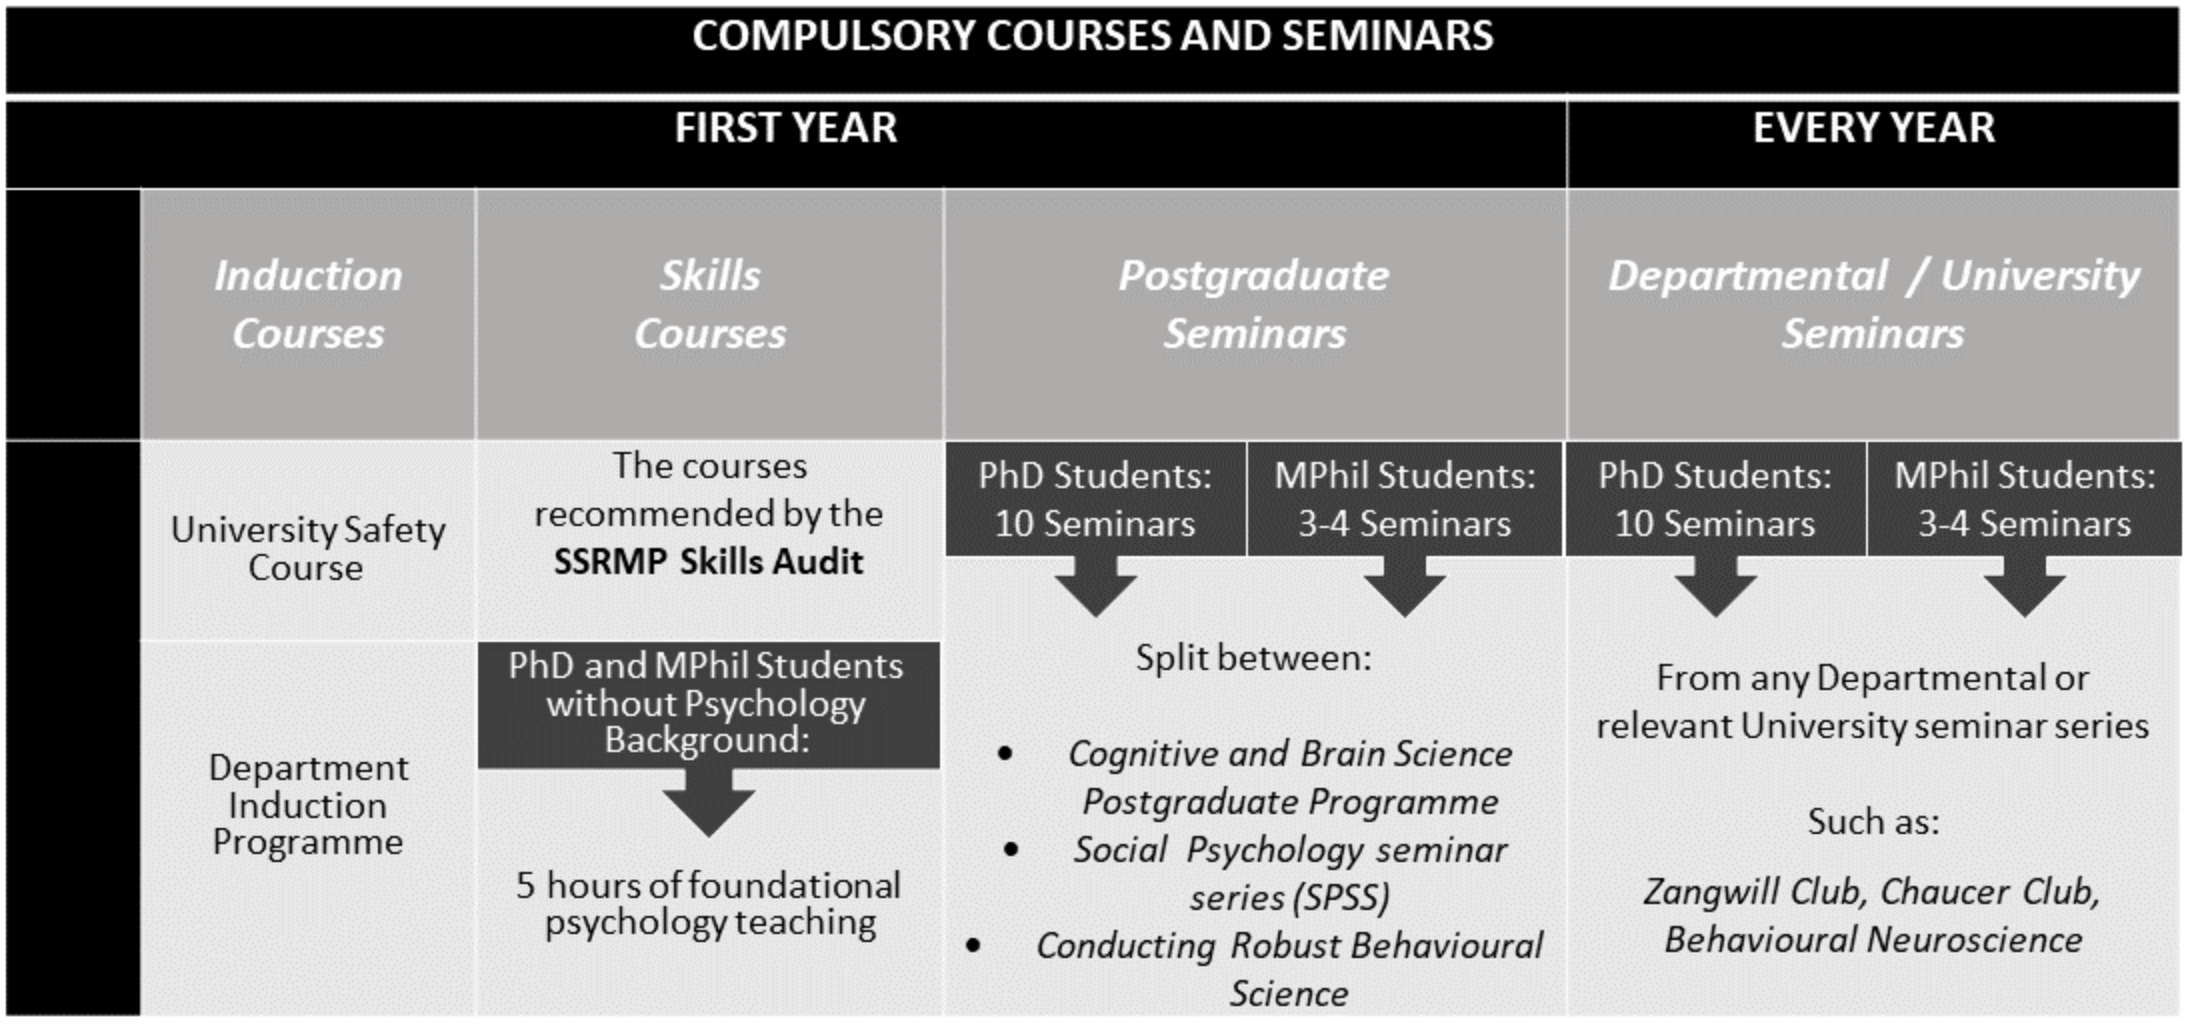 Compulsory courses and seminars 